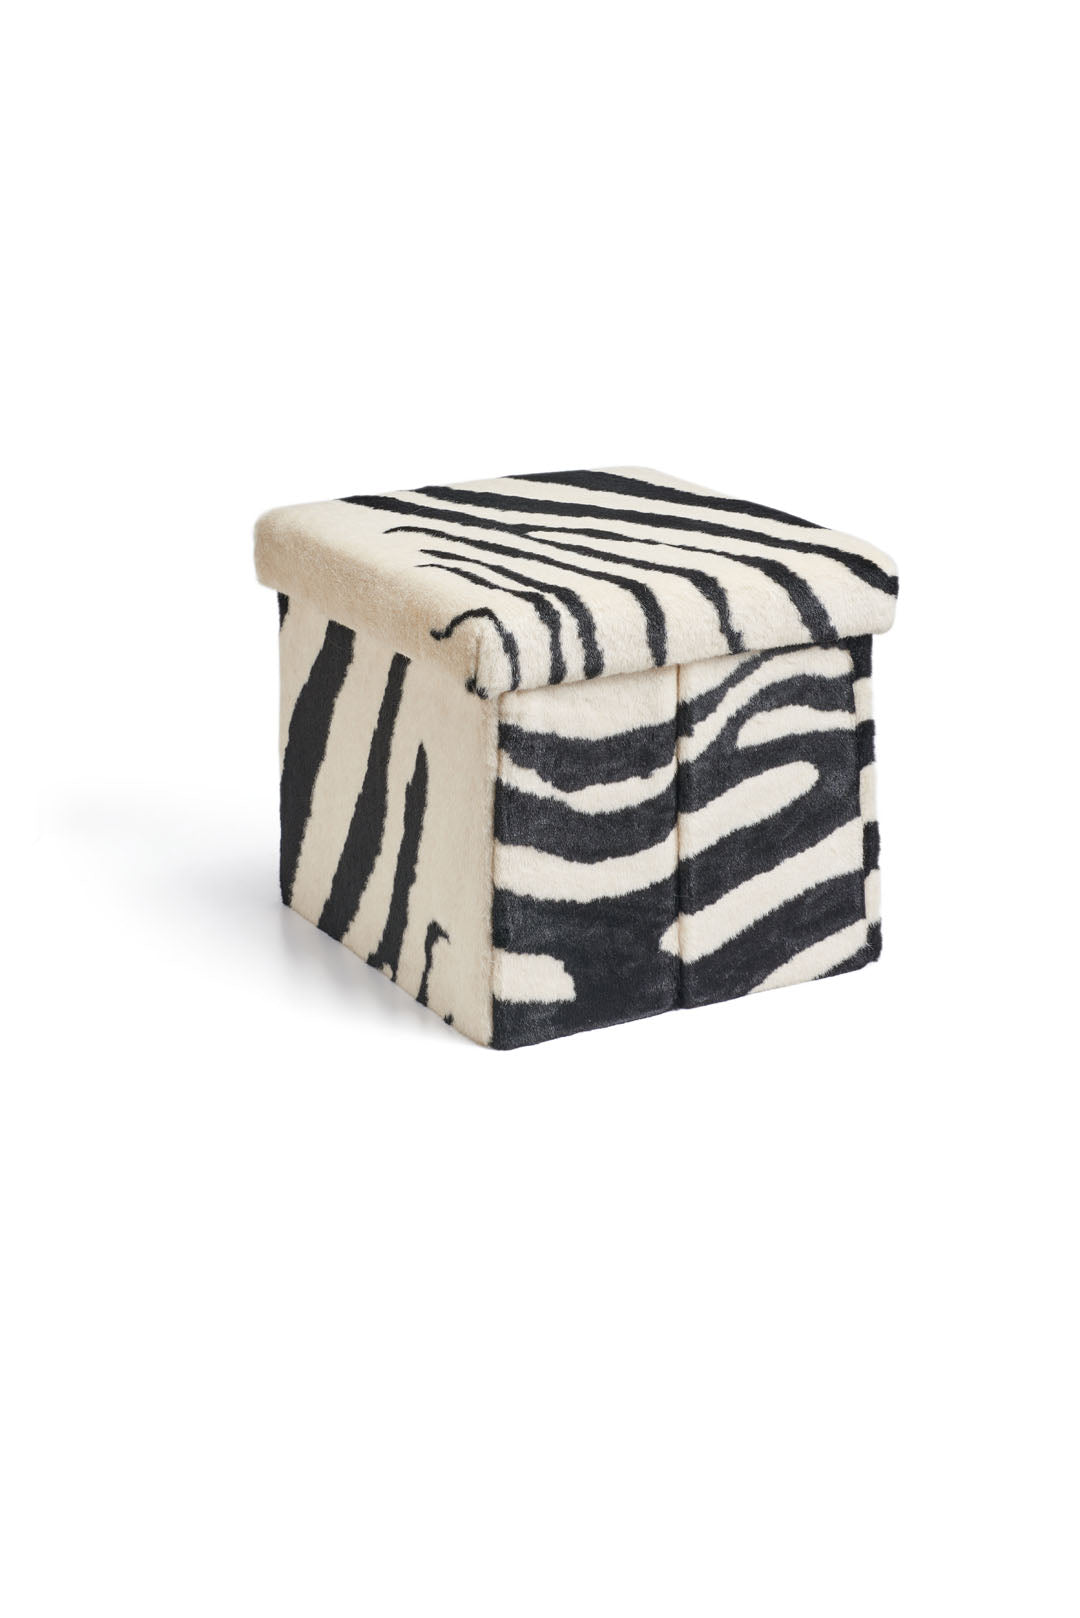 Zebra Faux Fur Ottoman Box | Signature Collection